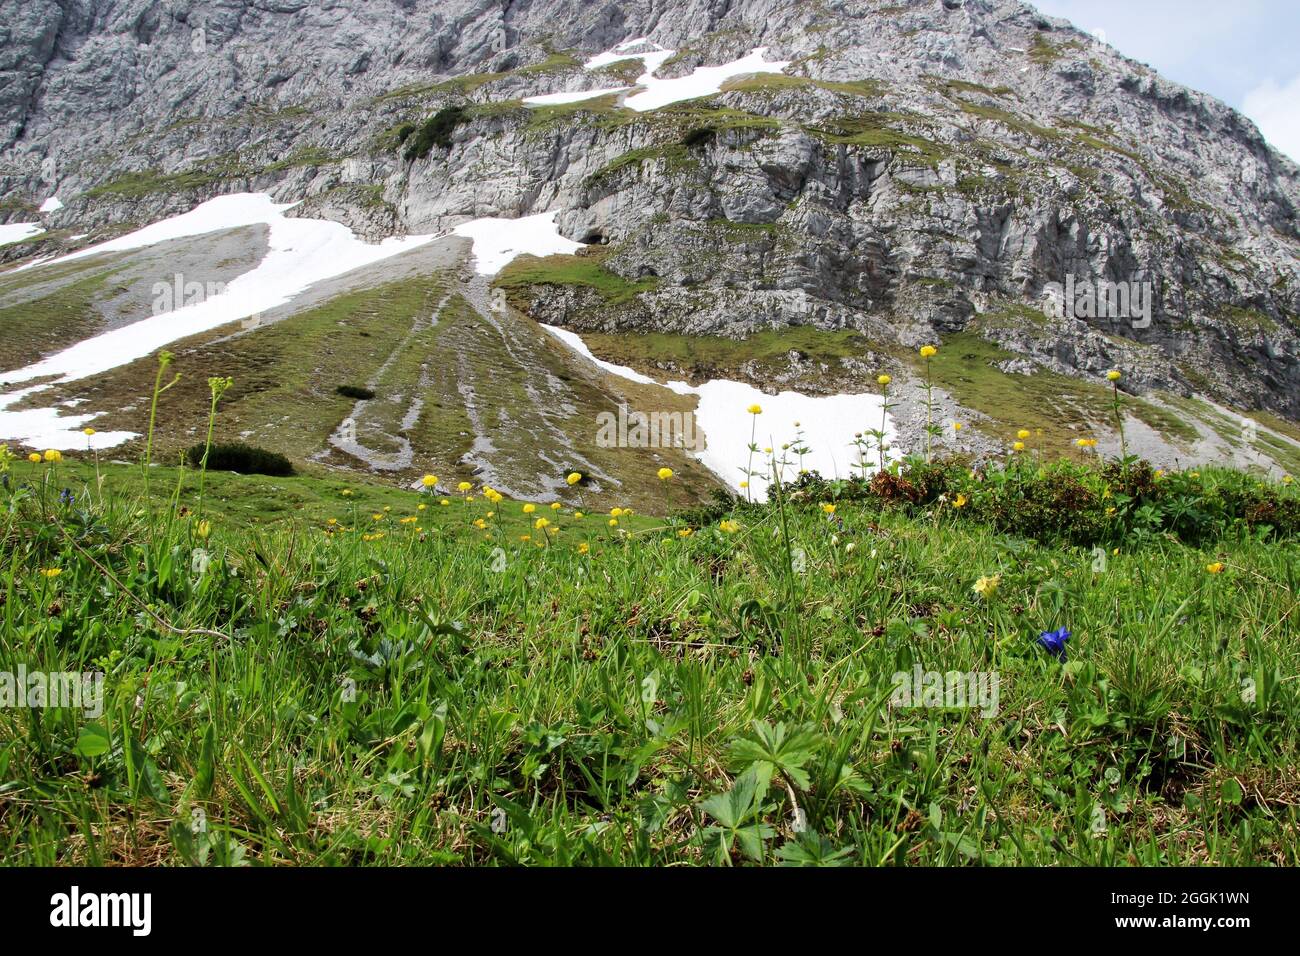 Globe flower (Trollius europaeus) in the Tyrolean Karwendel Mountains, Tyrol, Austria, Karwendel, mountain range in the background Stock Photo